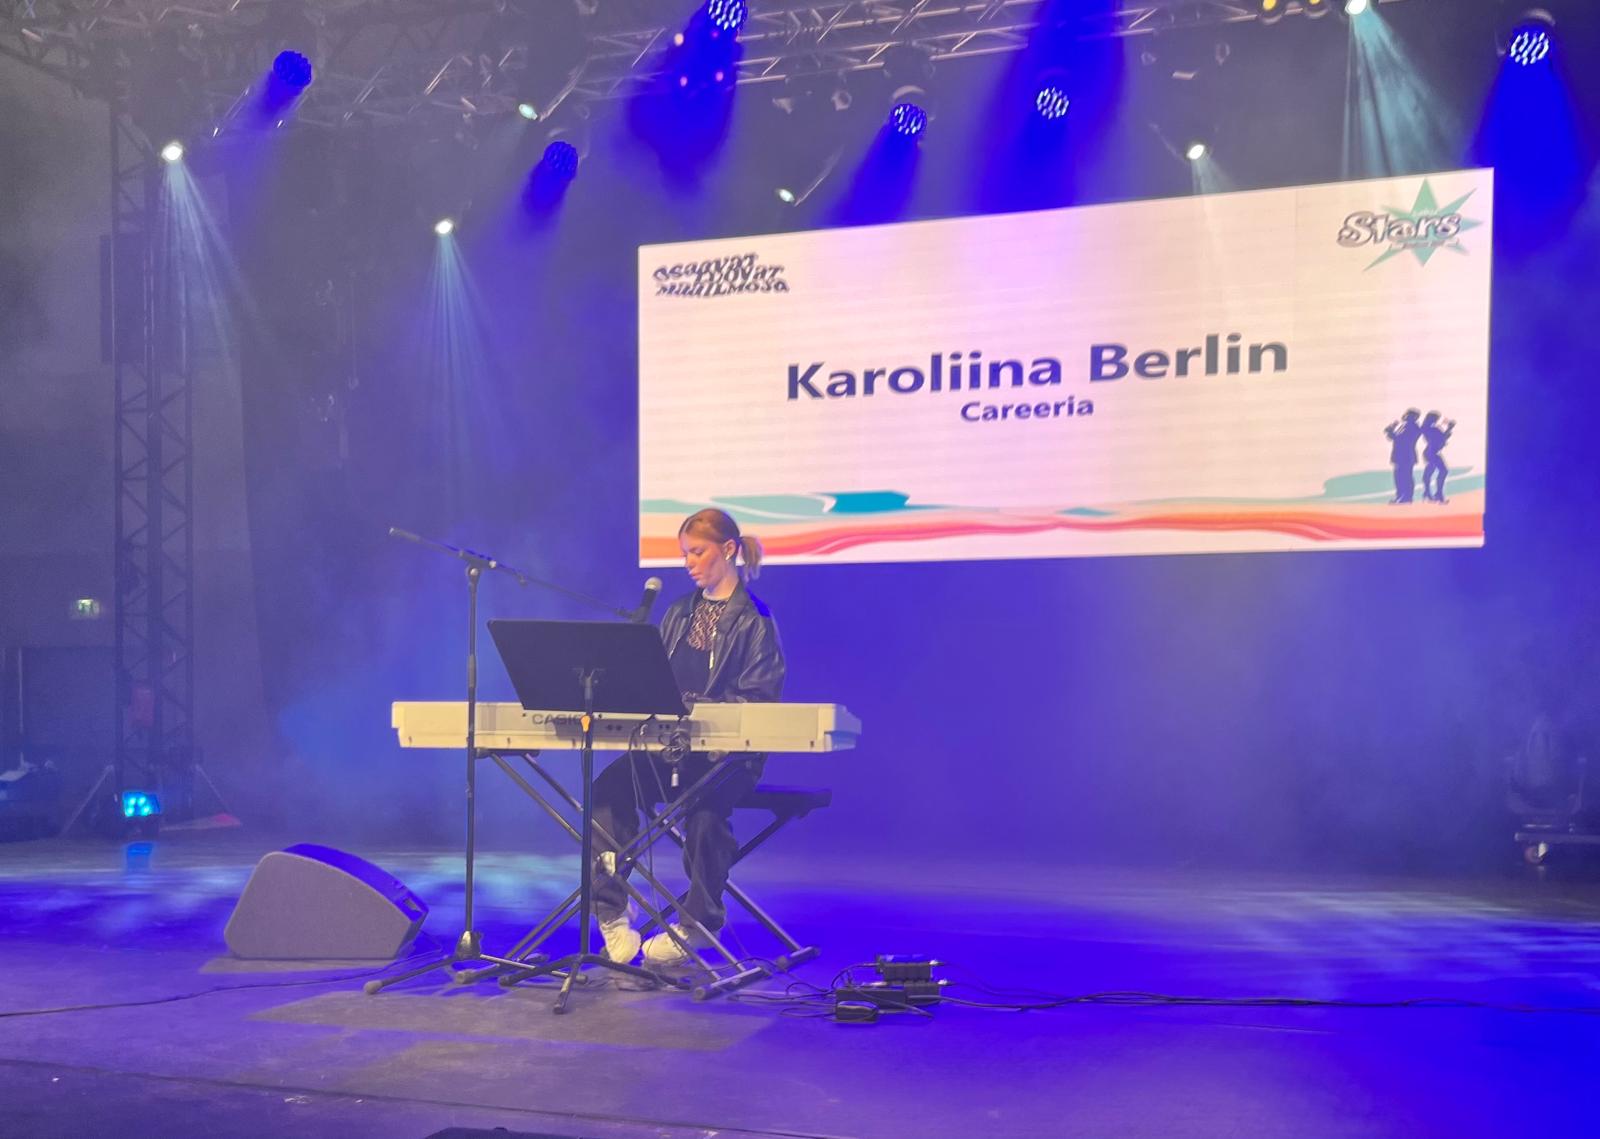 Nuori nainen lavalla soittamassa kosketinsoittimia. Taustalla heijastettuna teksti: Karoliina Berlin, Careeria.